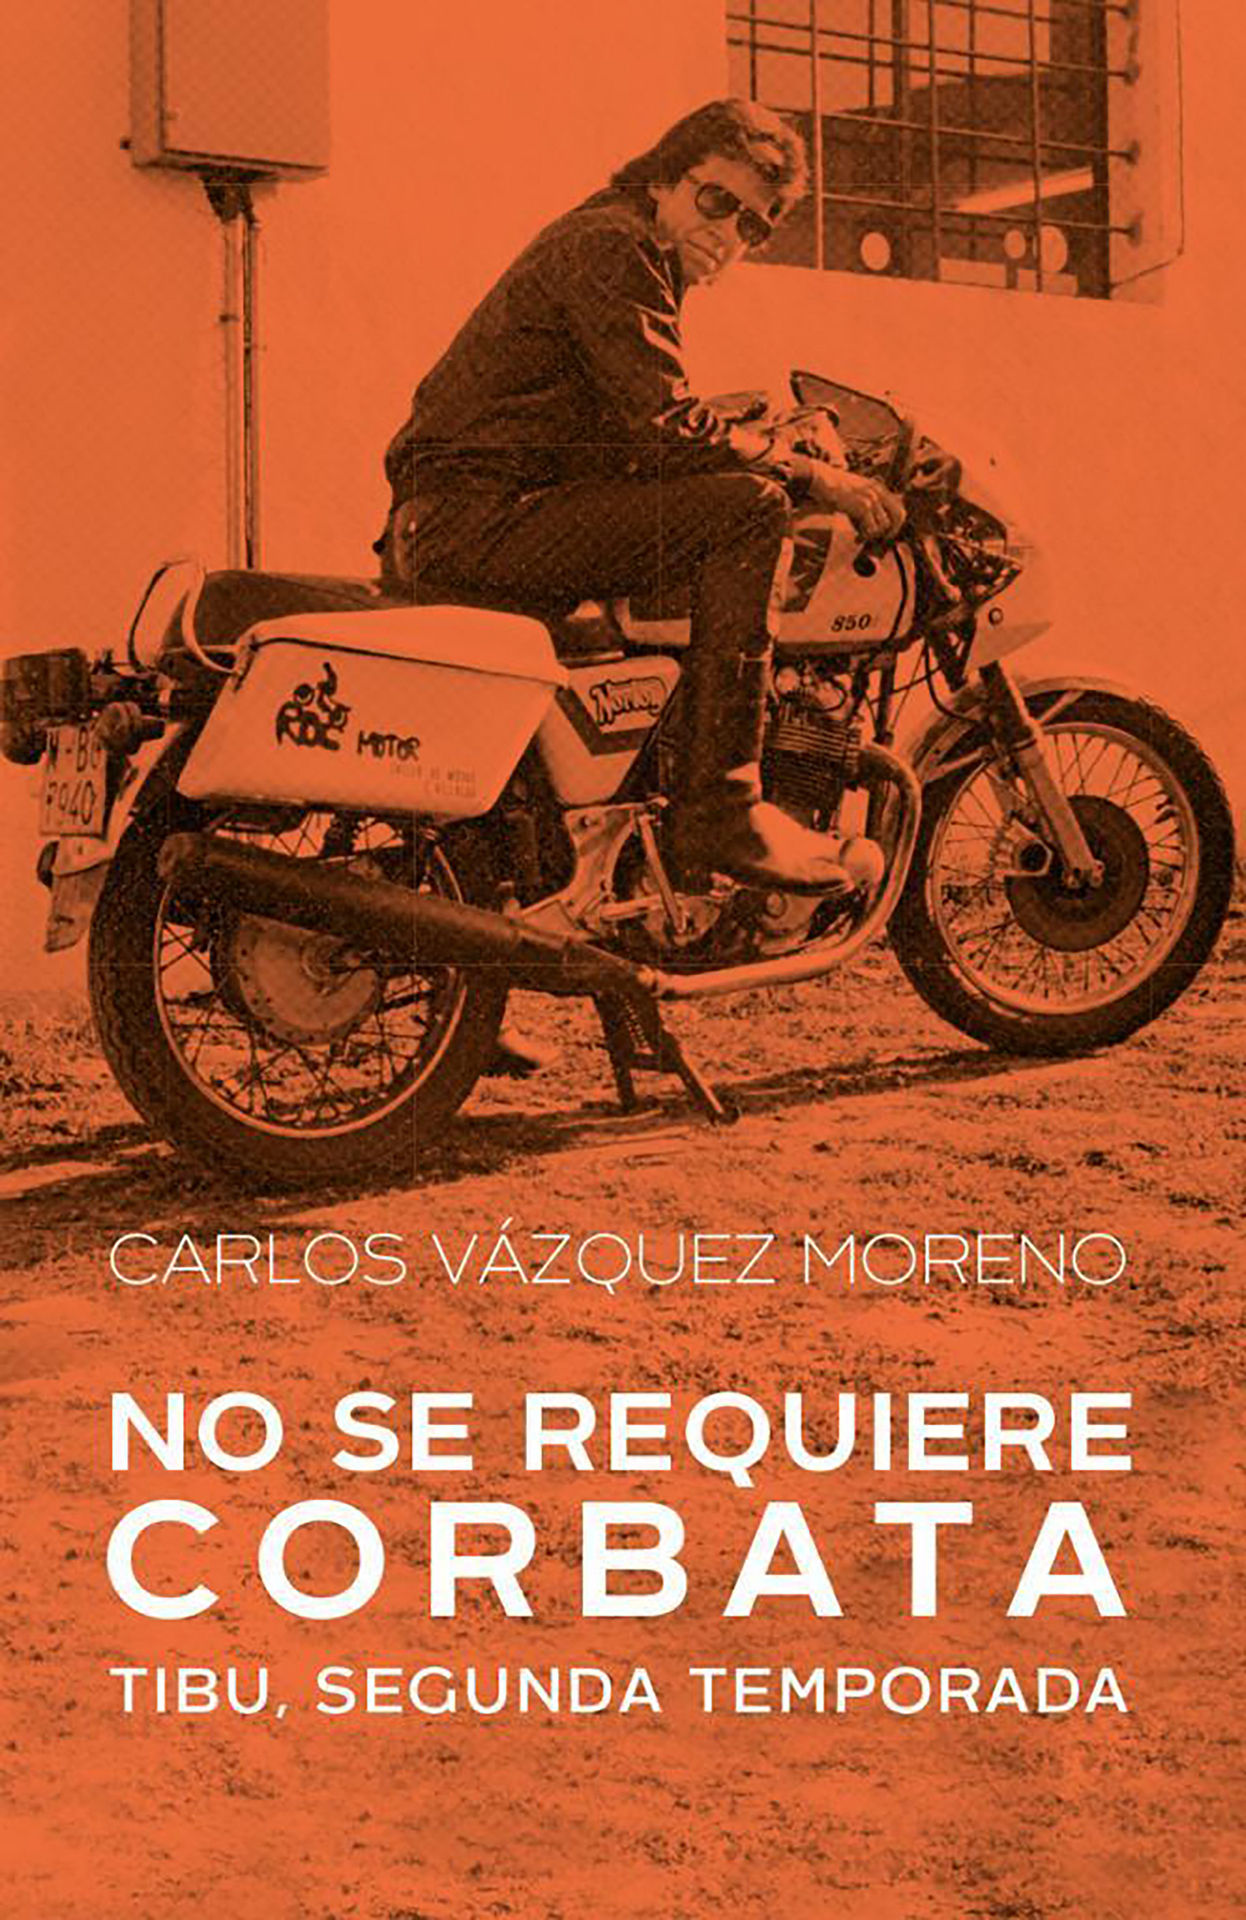 Libro: No se requiere corbata: Tibu, segunda temporada Edición Kindle por Carlos Vázquez Moreno